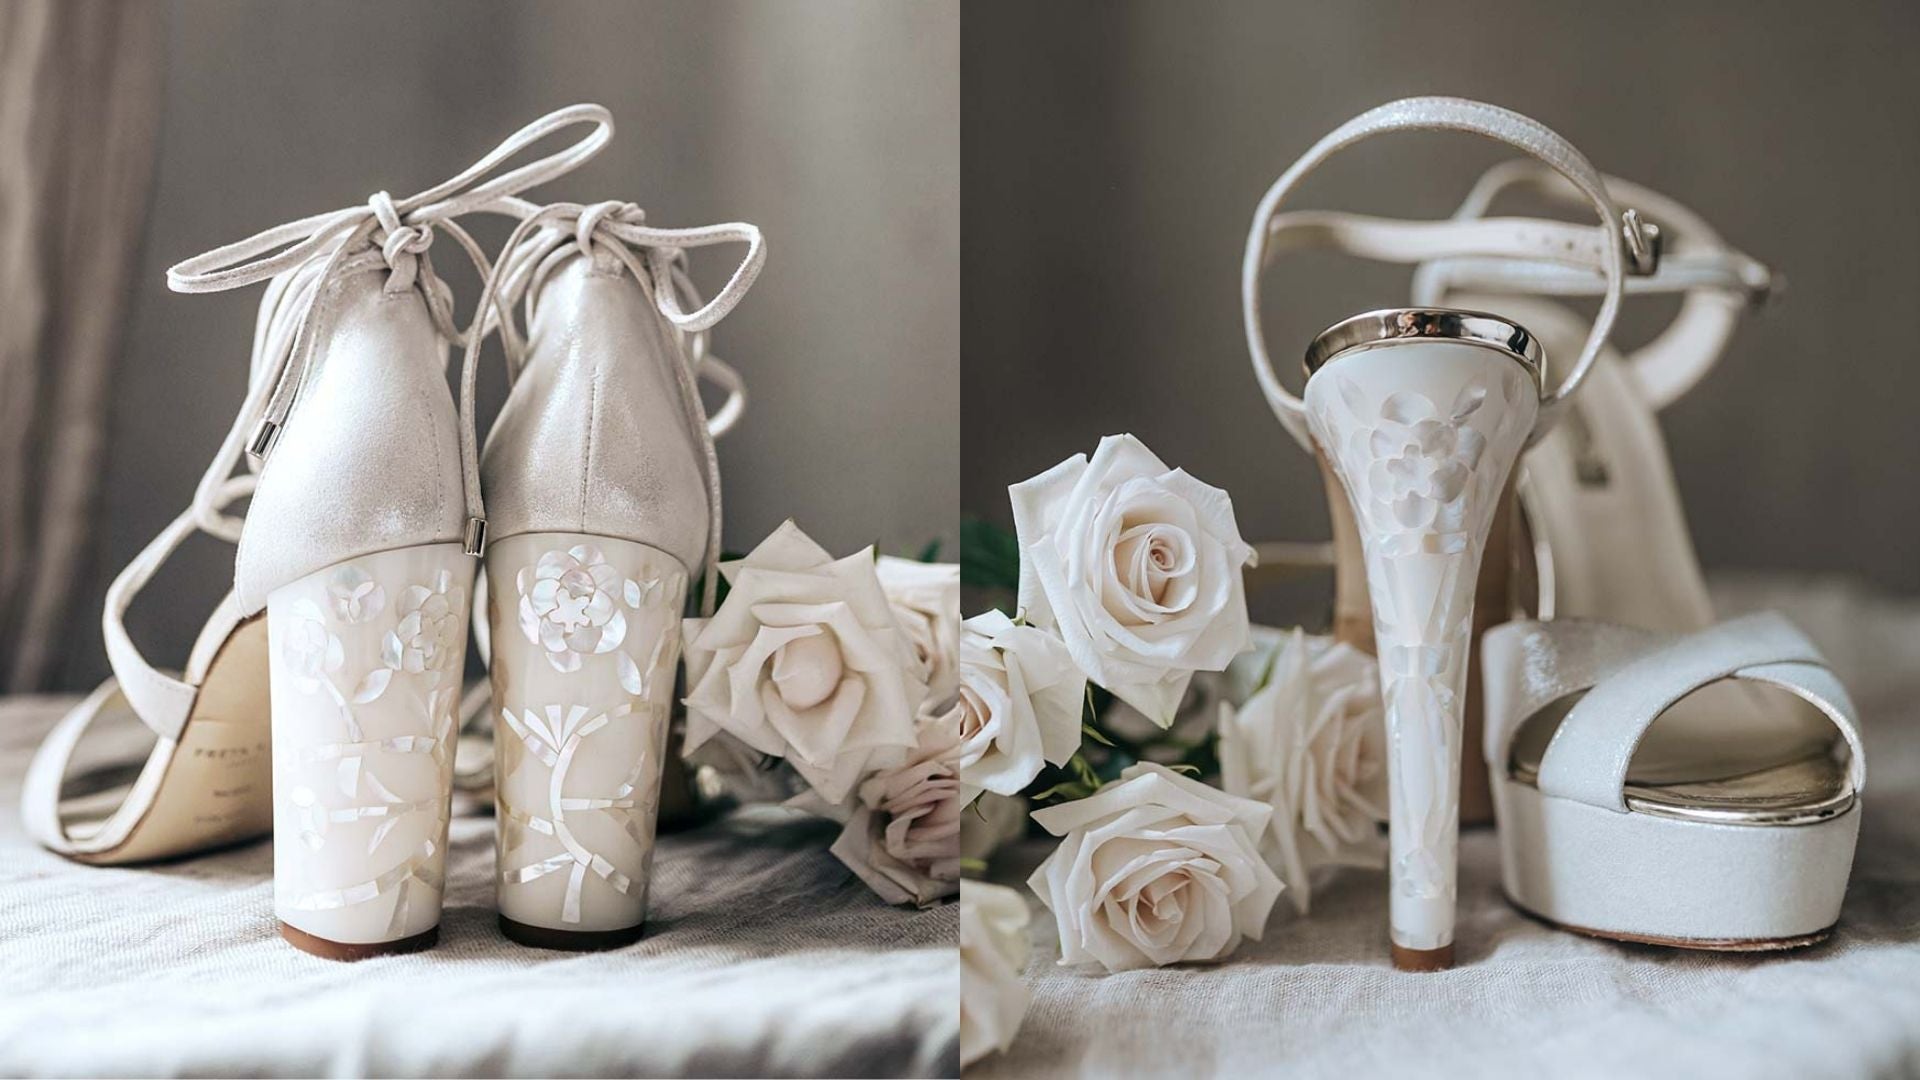 New trending heel beautiful design new collection heels design beautiful  background in room design sandals & flower